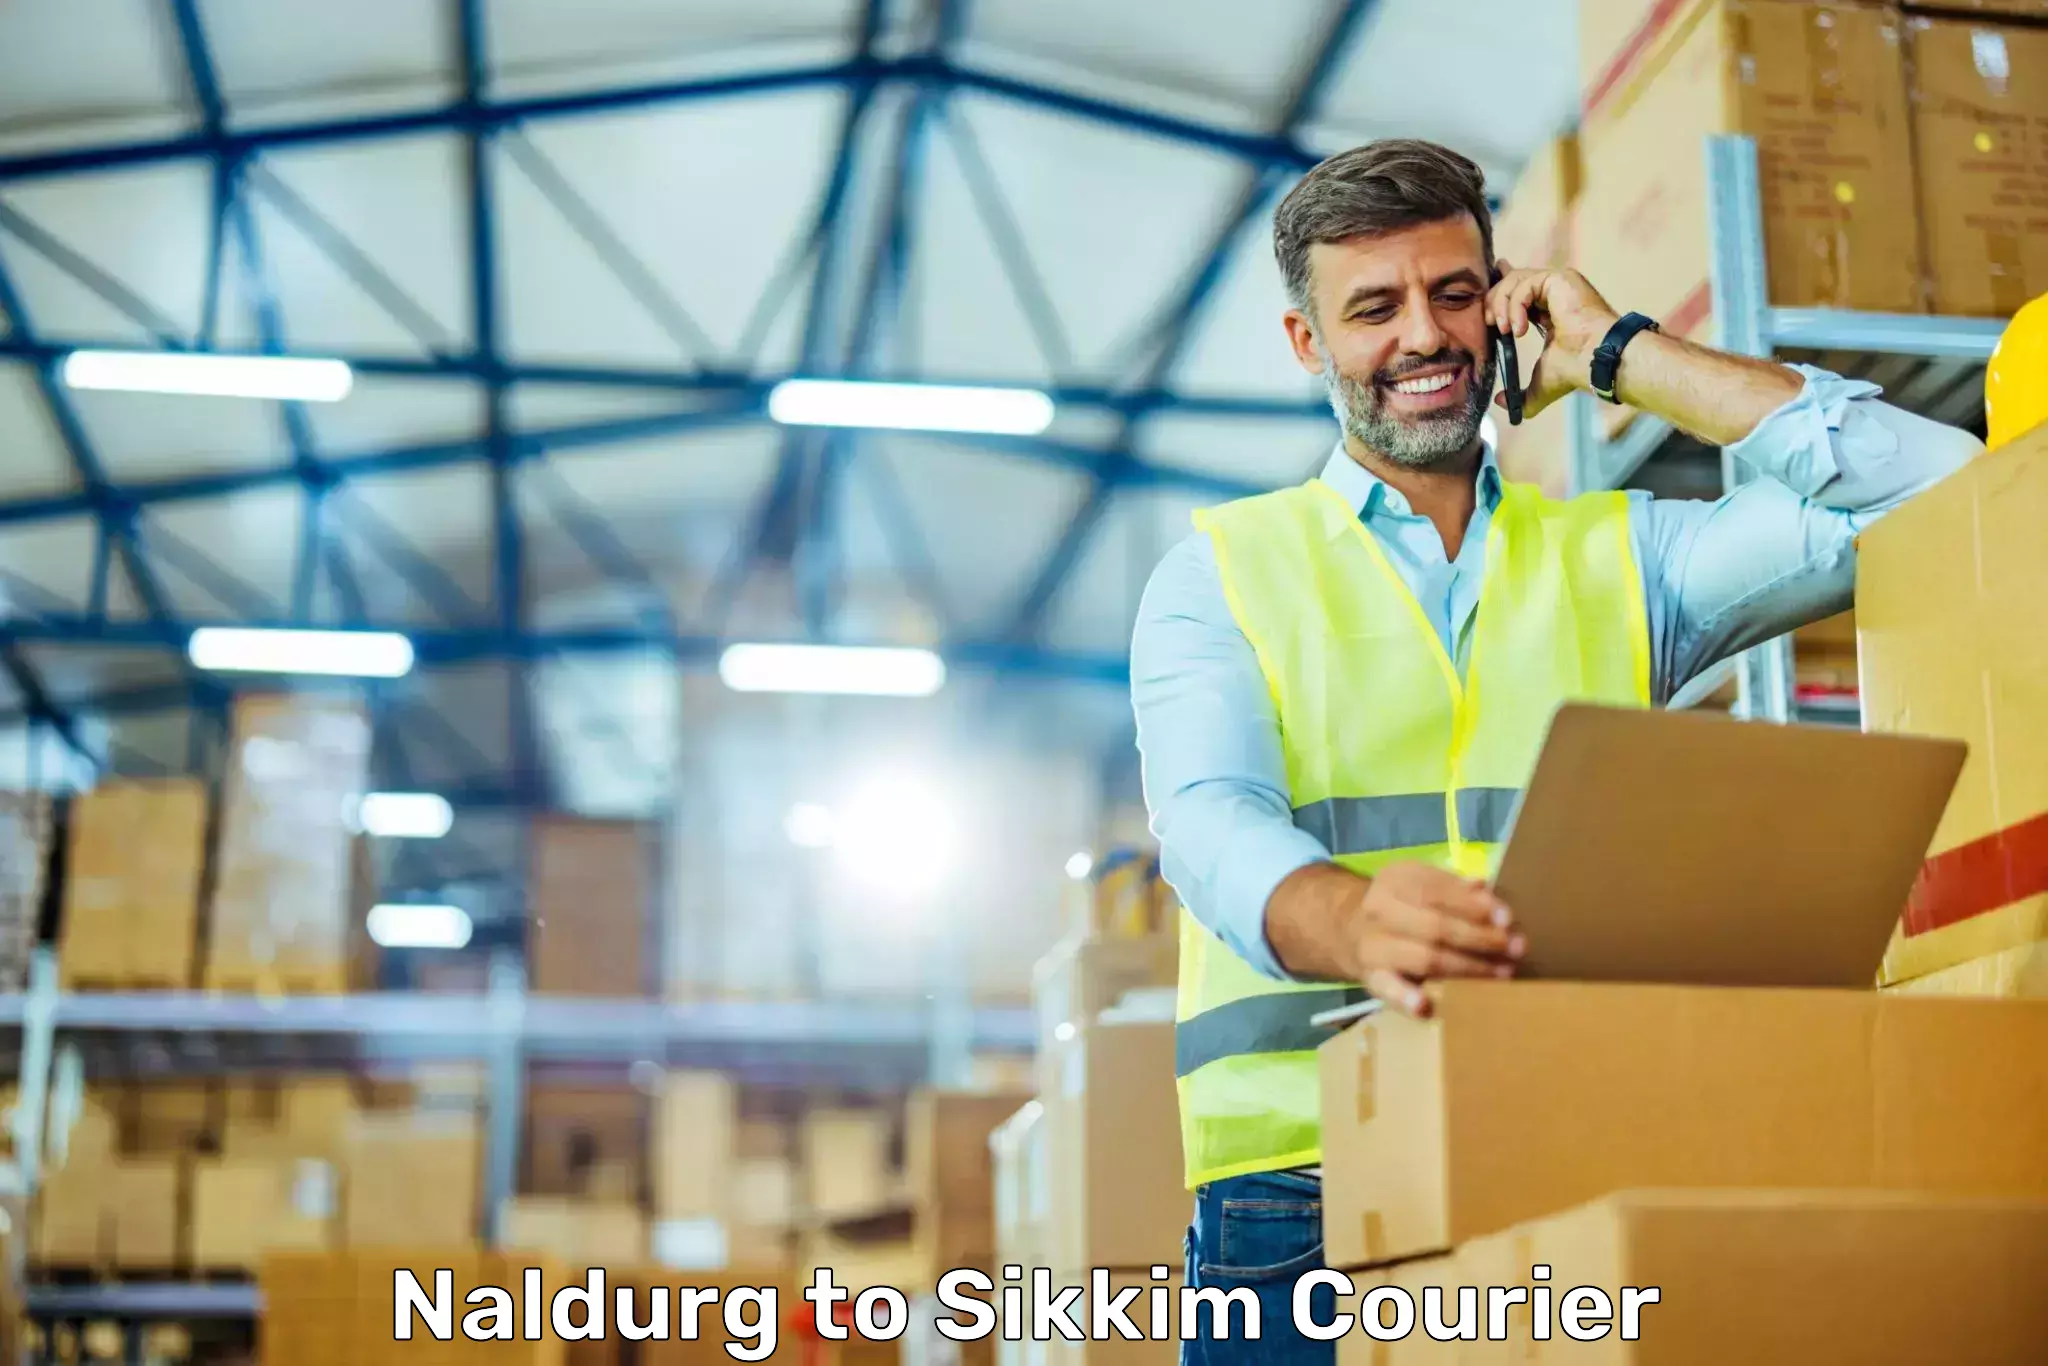 Urban courier service Naldurg to West Sikkim